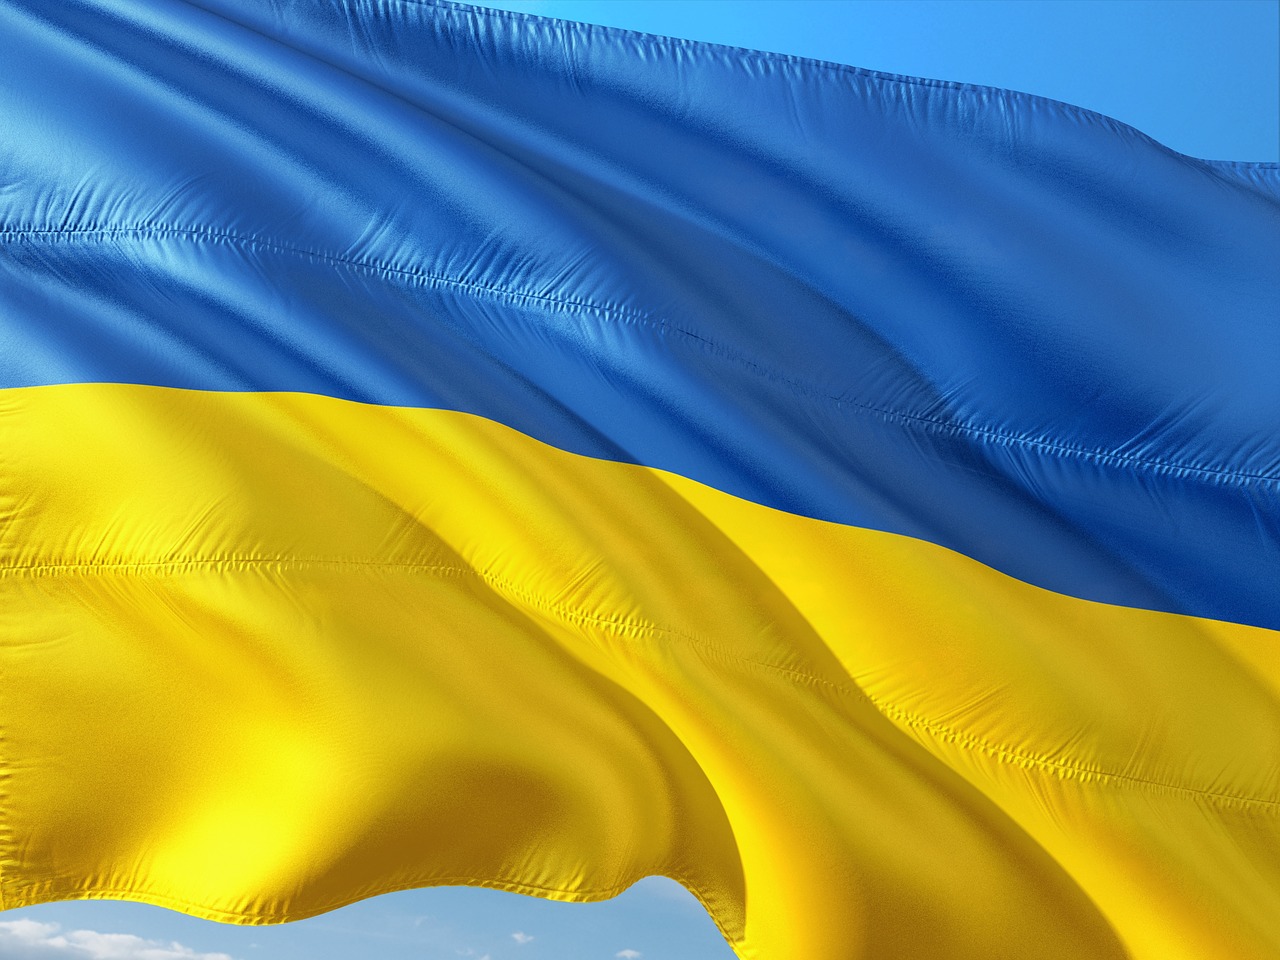 Километровый украинский флаг сшивали во всех регионах Украины, - соорганизатор акции